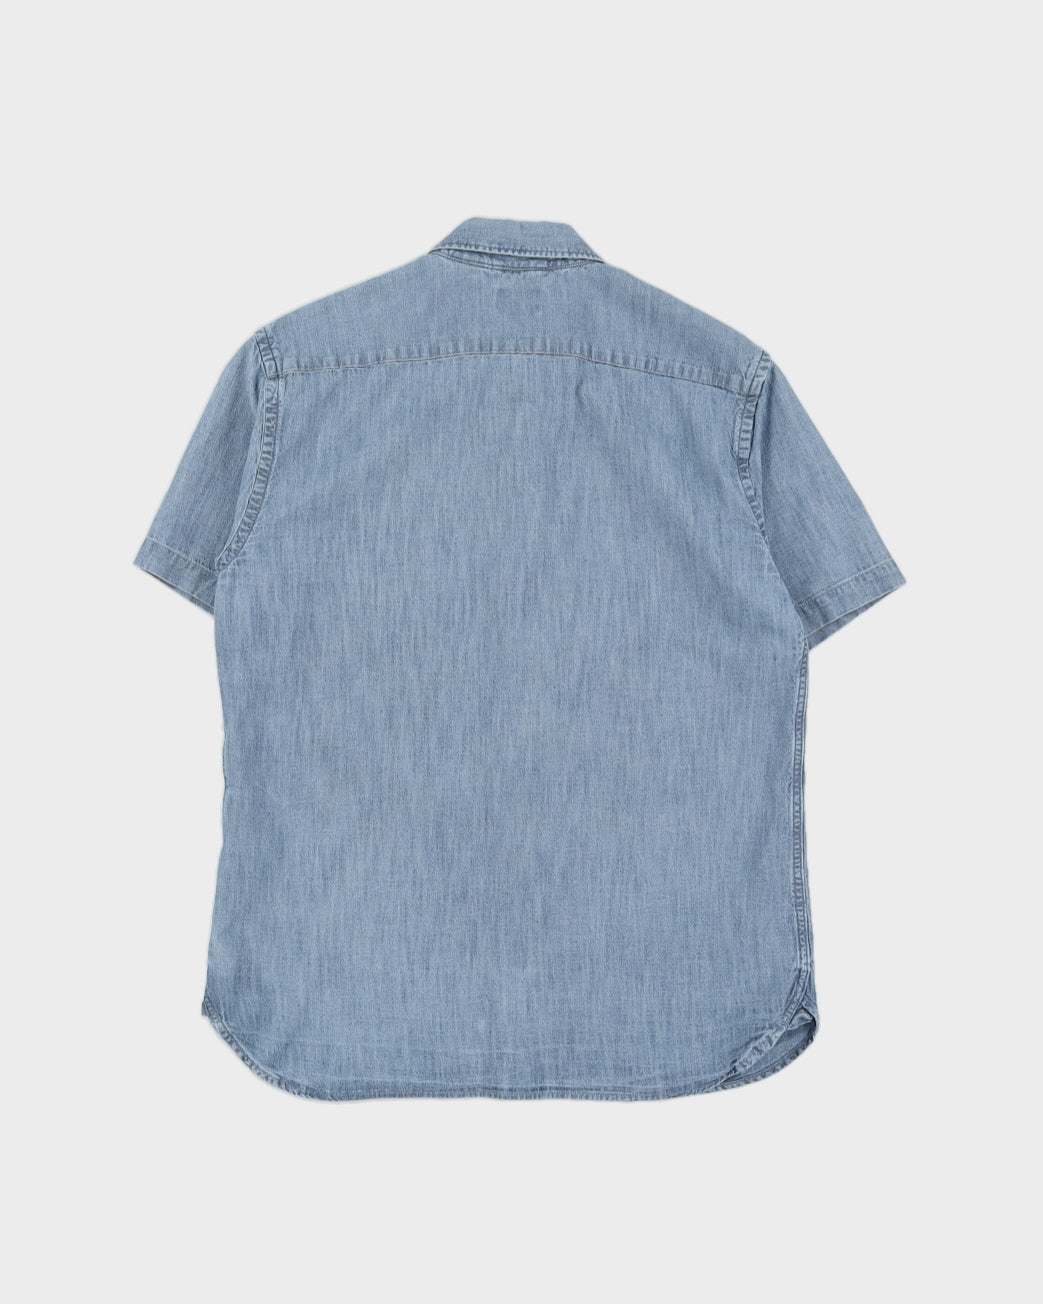 Levi's Blue Denim Short Sleeve Shirt - S